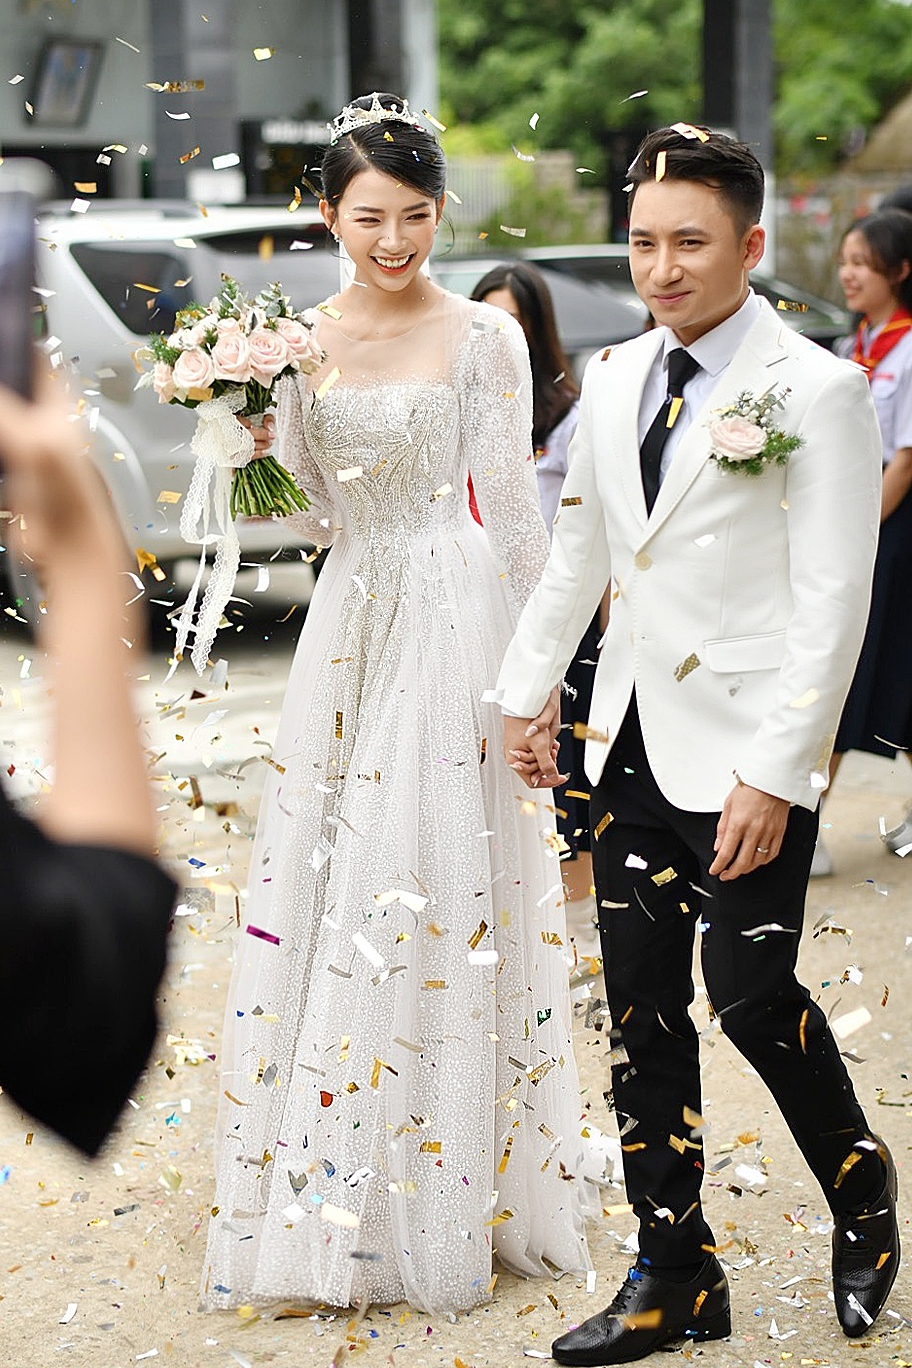 Phan Mạnh Quỳnh dời ngày cưới vì dịch Covid-19